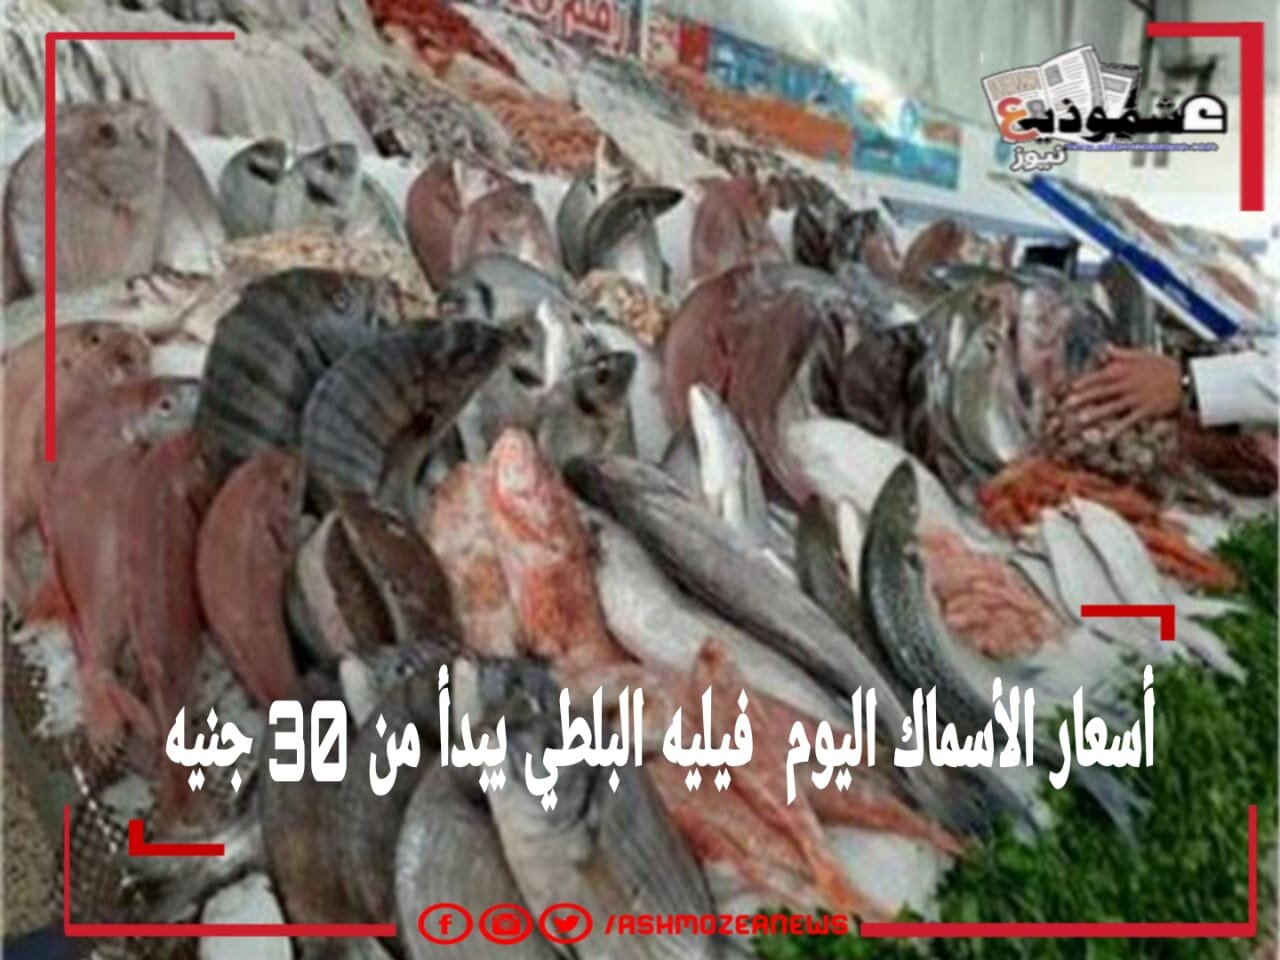 أسعار الأسماك اليوم .